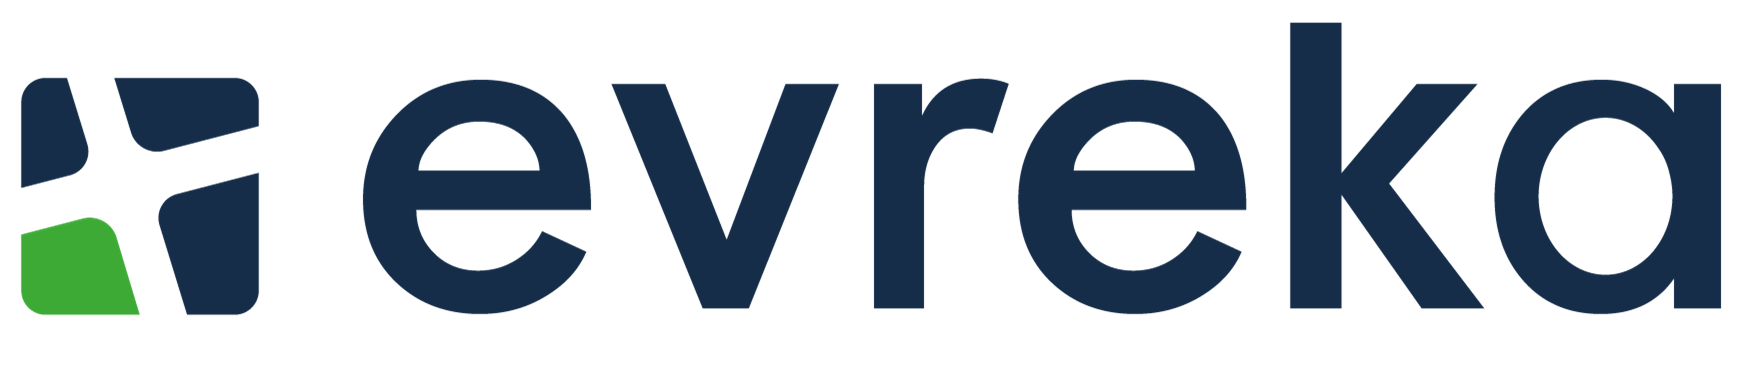 evreka-logo.png